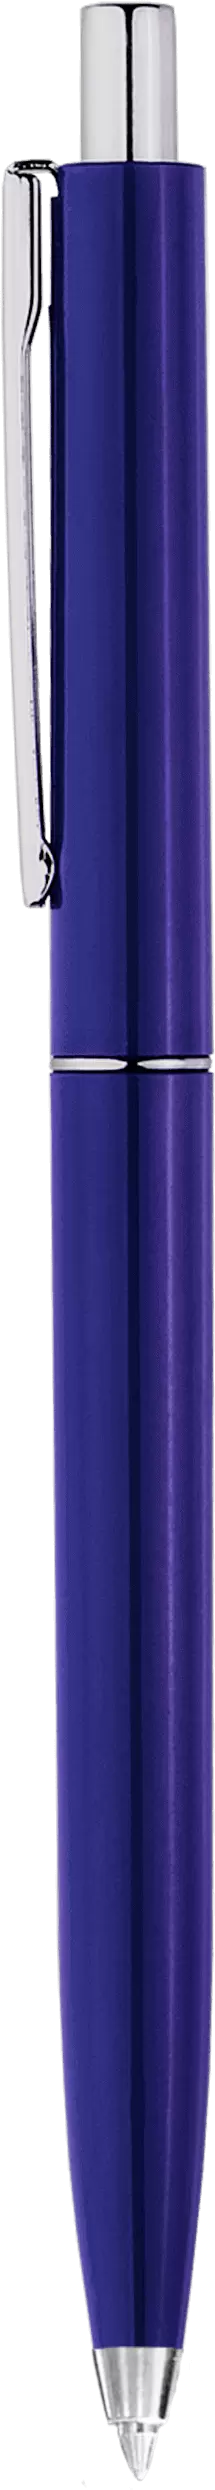 Ручка TOP Темно-синяя 2016-14